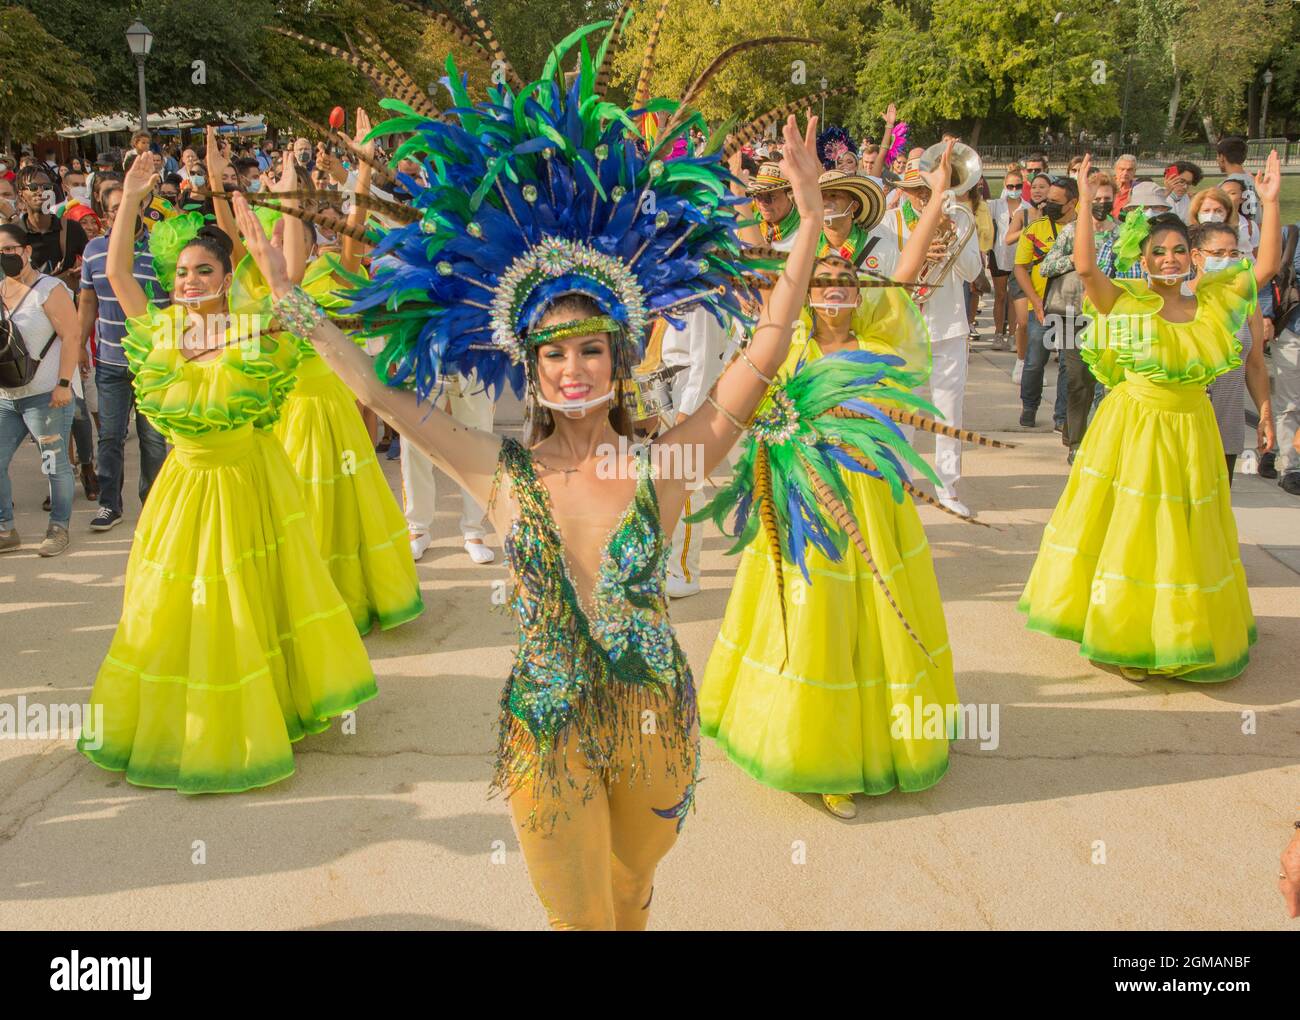 Auf dem Foto die Königin des Karnevals von Barranquilla, Kolumbien Valeria Charris Salcedo. Der Karneval von Barranquilla, Kolumbien in den Straßen von Madrid als besonderer Gast auf der Madrider Buchmesse kommt die große Farbpalette aus Kolumbien, genau aus Barranquilla, nach El Retiro, um die Buchmesse zu malen. Denn das lateinamerikanische Land ist Gast in dieser neuen Ausgabe mit allen Sicherheitsmaßnahmen gegen das Coronavirus. Eine unwiederholbare Aktivität, die auch von der UNESCO zum Meisterwerk des mündlichen und immateriellen Erbes der Menschheit erklärt wurde und die jetzt noch geschehen wird Stockfoto